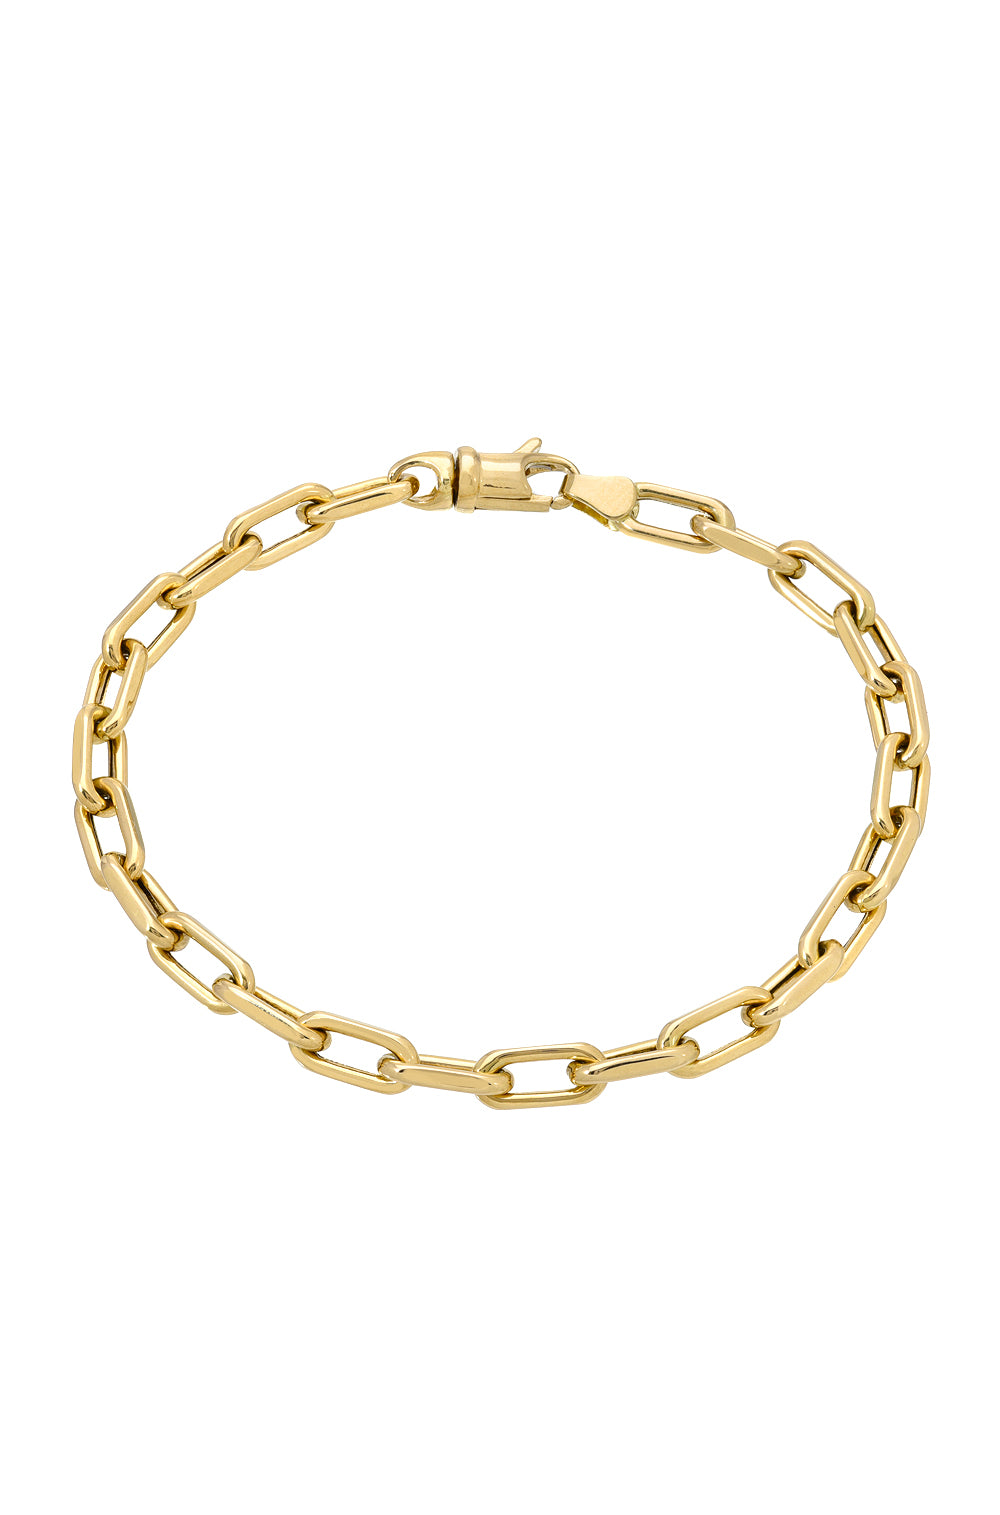 Gold Bracelet 14K Gold Cuban Link Chain Bracelet Womens -  Denmark